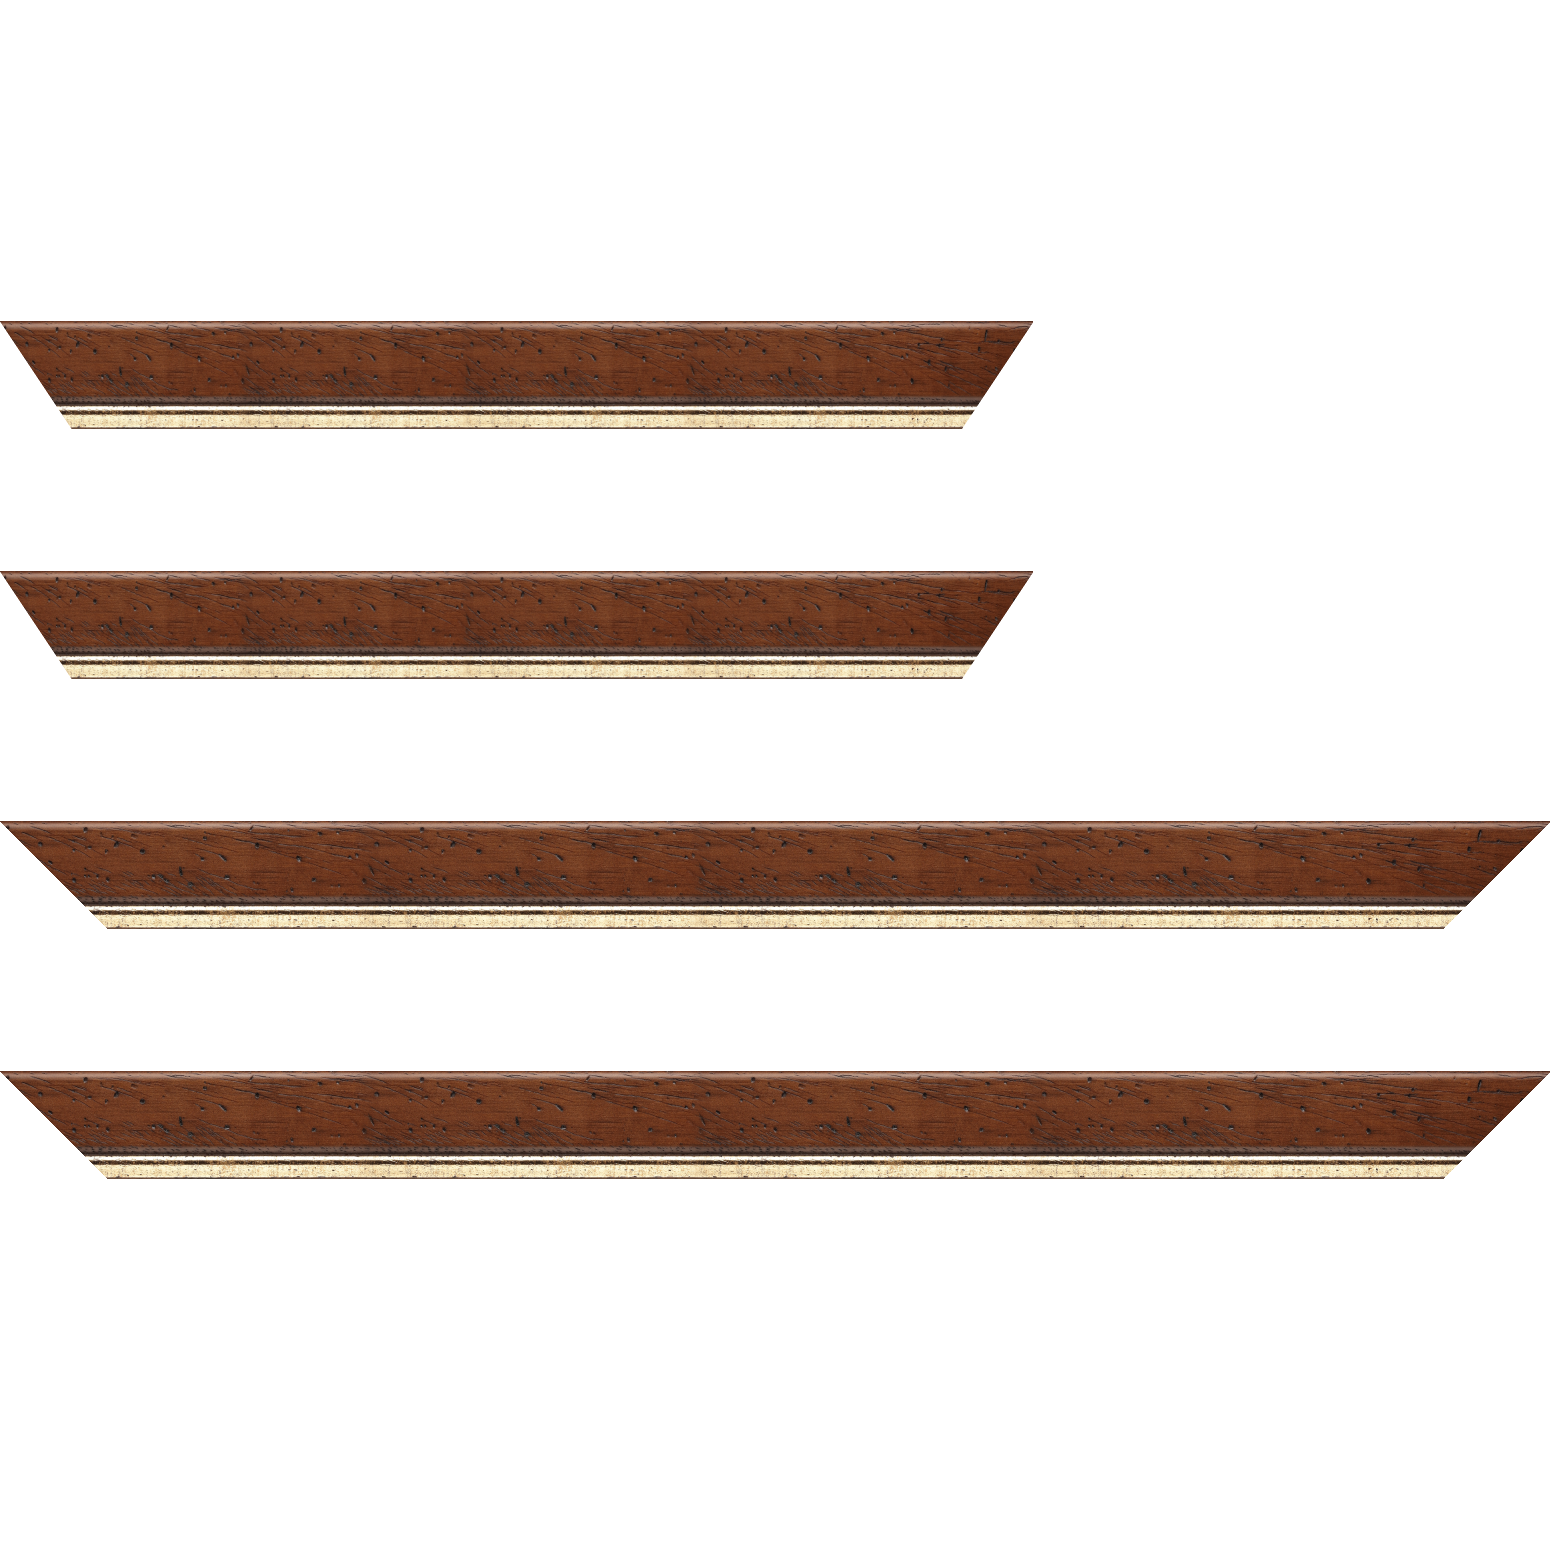 Baguette bois profil arrondi largeur 3.5cm marron satiné classique filet or - 24x30